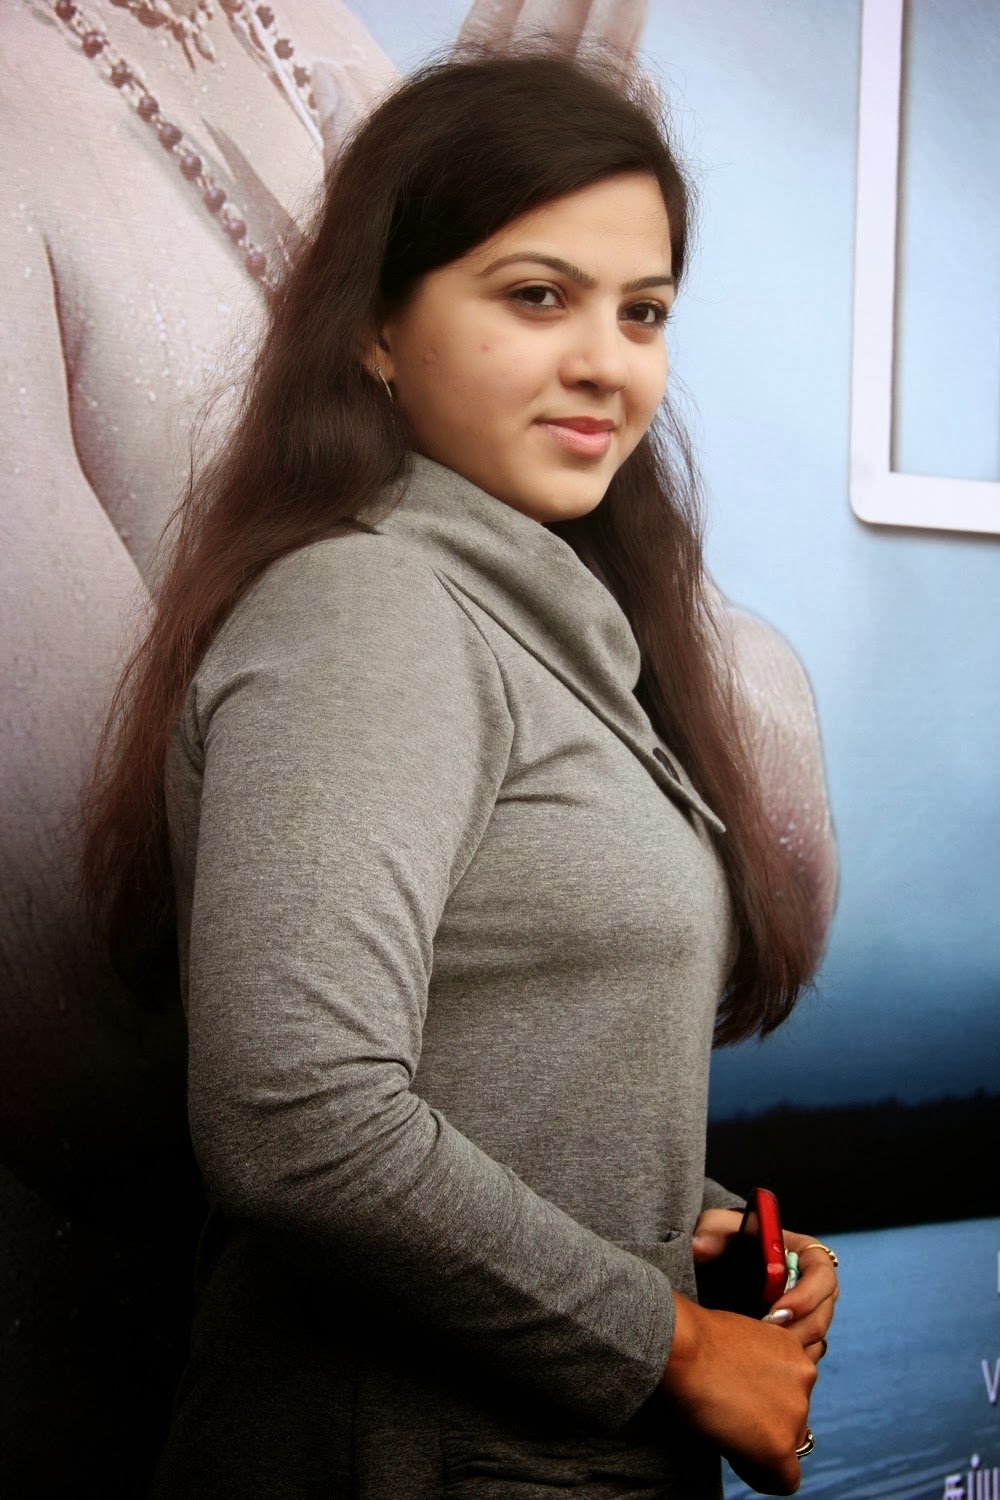 Kerala Cute Girls Photos For Facebook Profile Post ~ Actress Rare Photo 